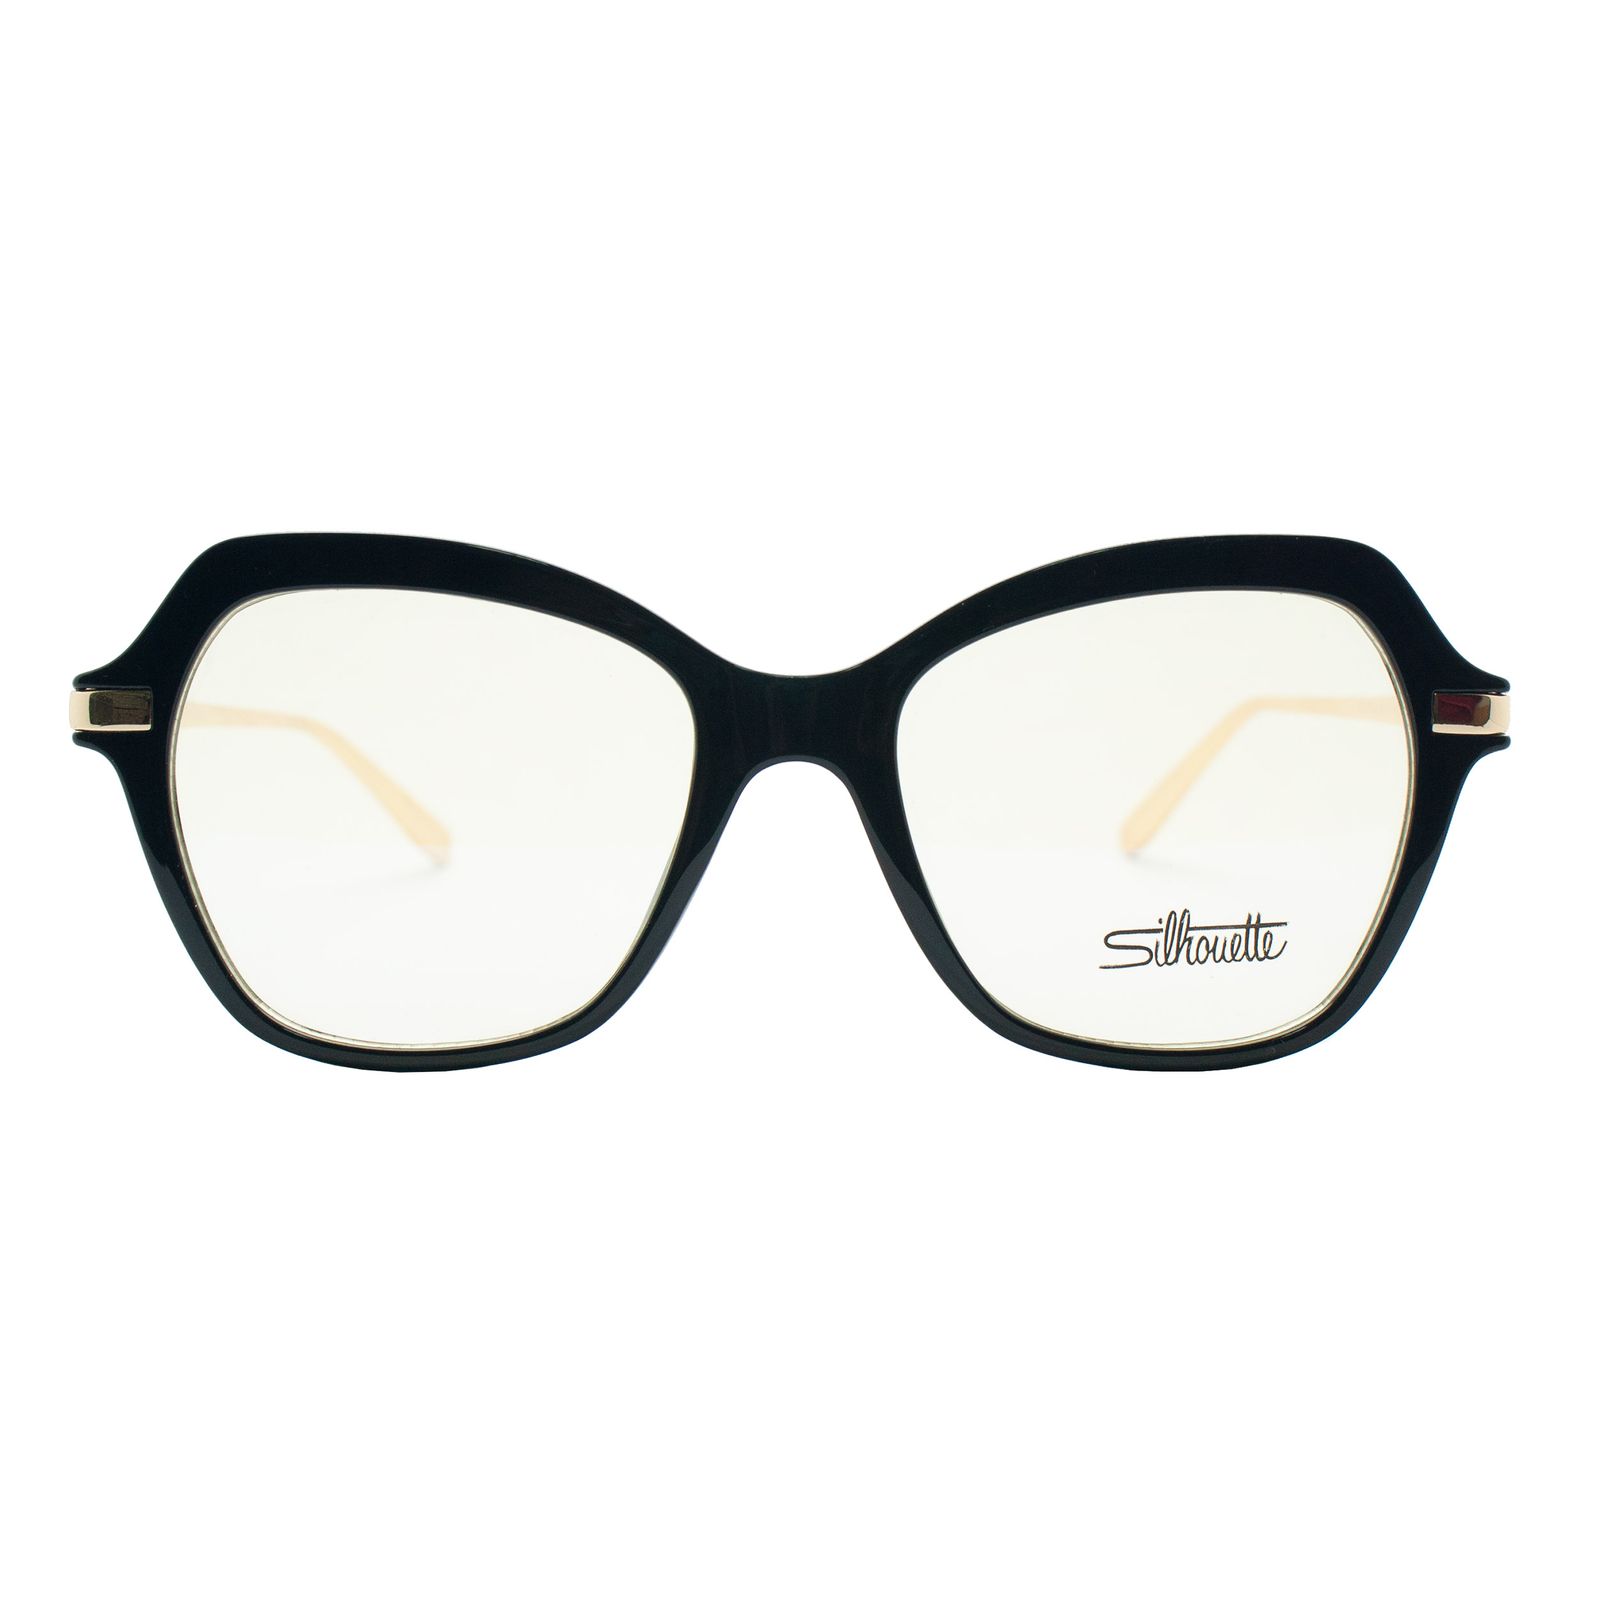 فریم عینک طبی سیلوئت مدل 92328 C1 -  - 1